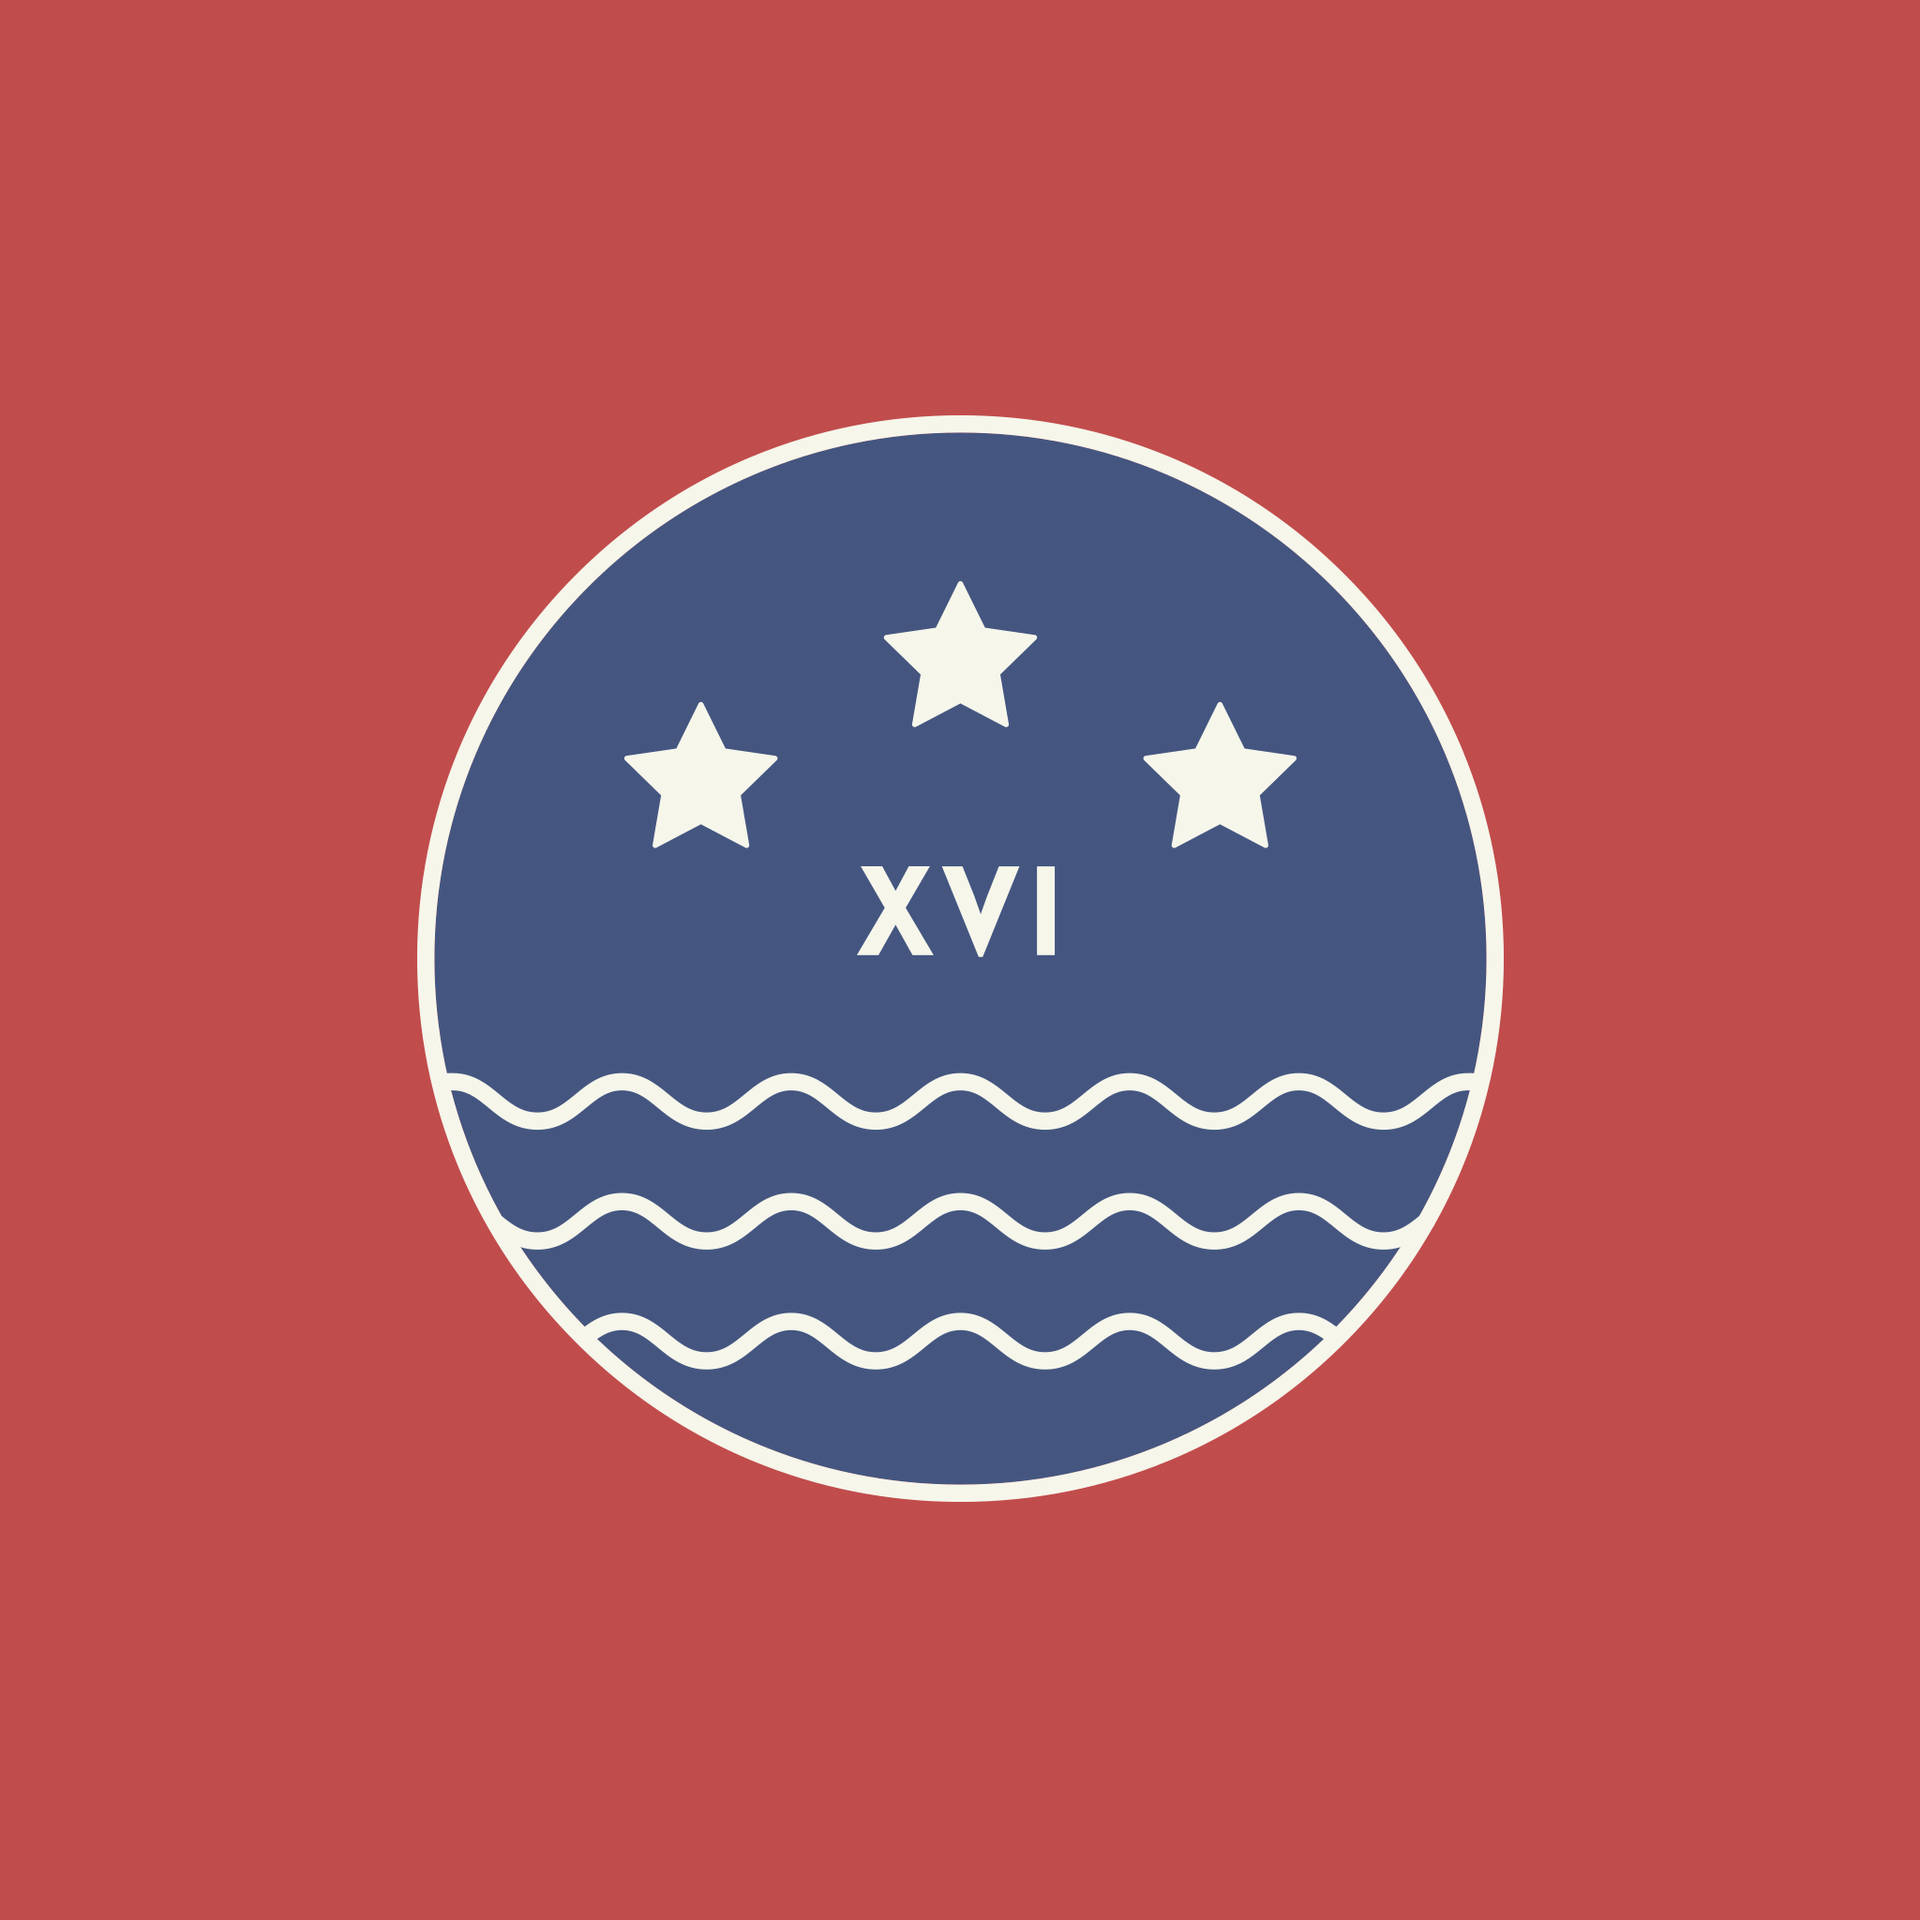 Tennessee Inspired Flag Logo Wallpaper